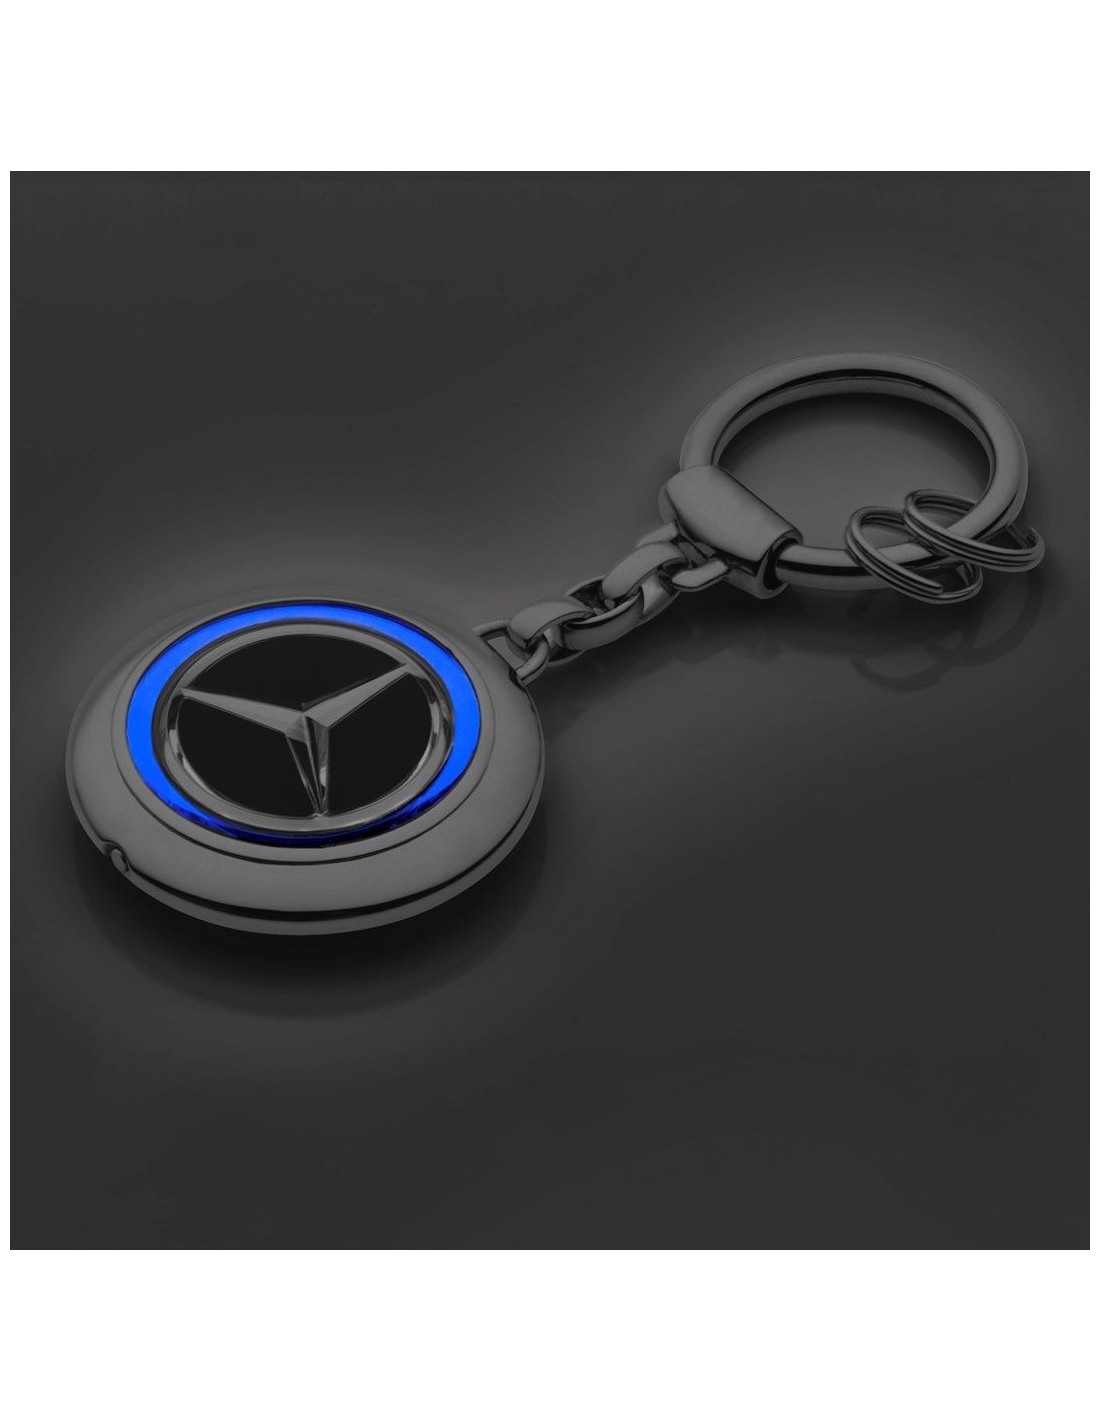 Neu Auto Leder Schlüsselanhänger schwarz für Mercedes Benz Emblem Tuning  Keyring